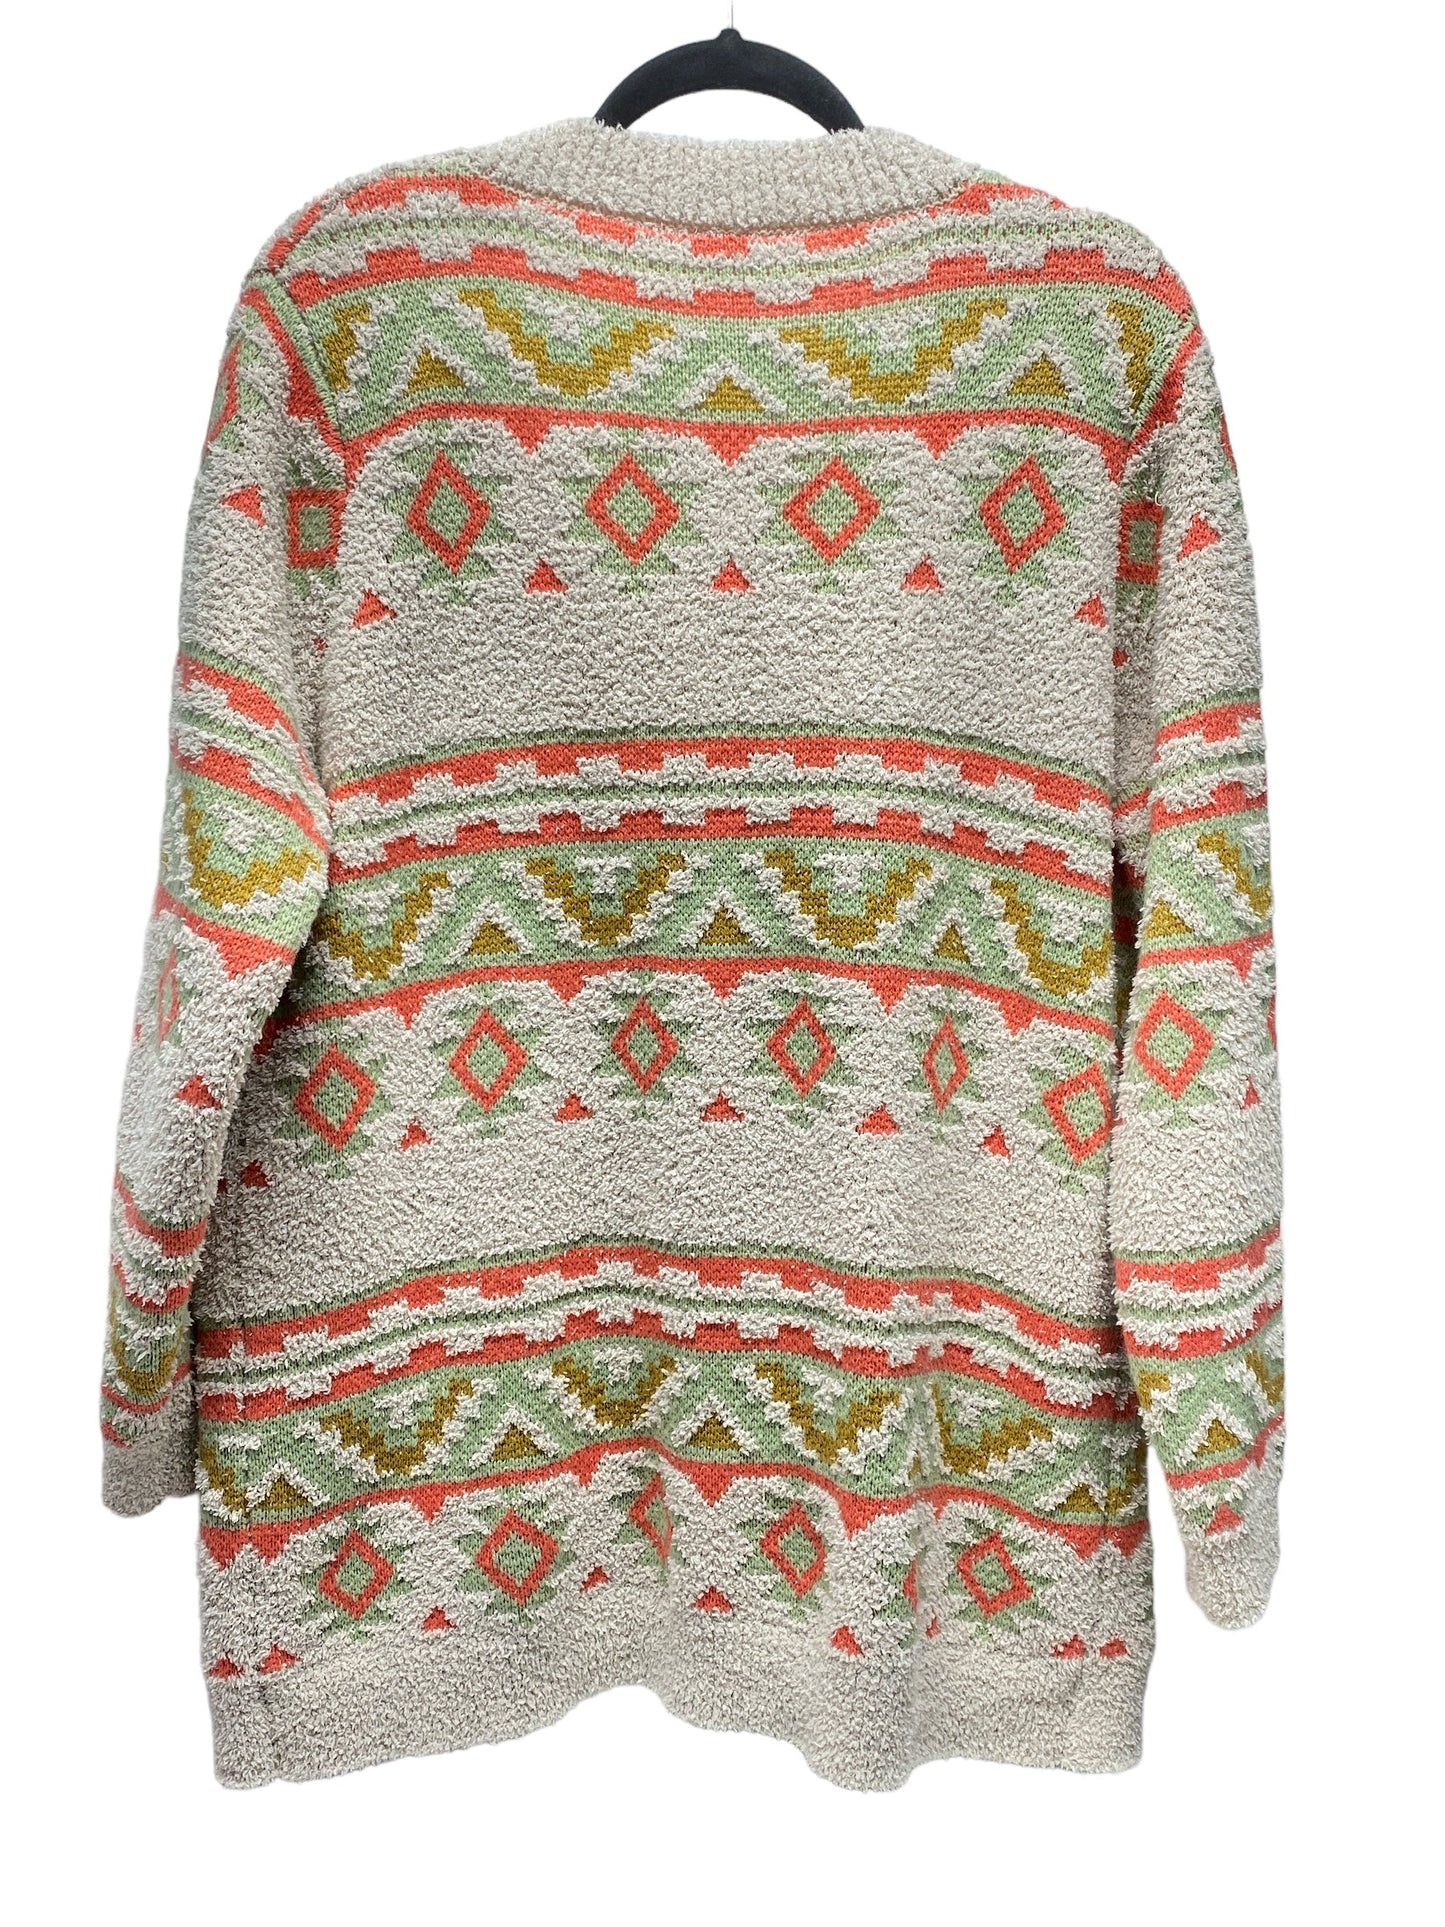 Sweater Cardigan By Jodifl  Size: S